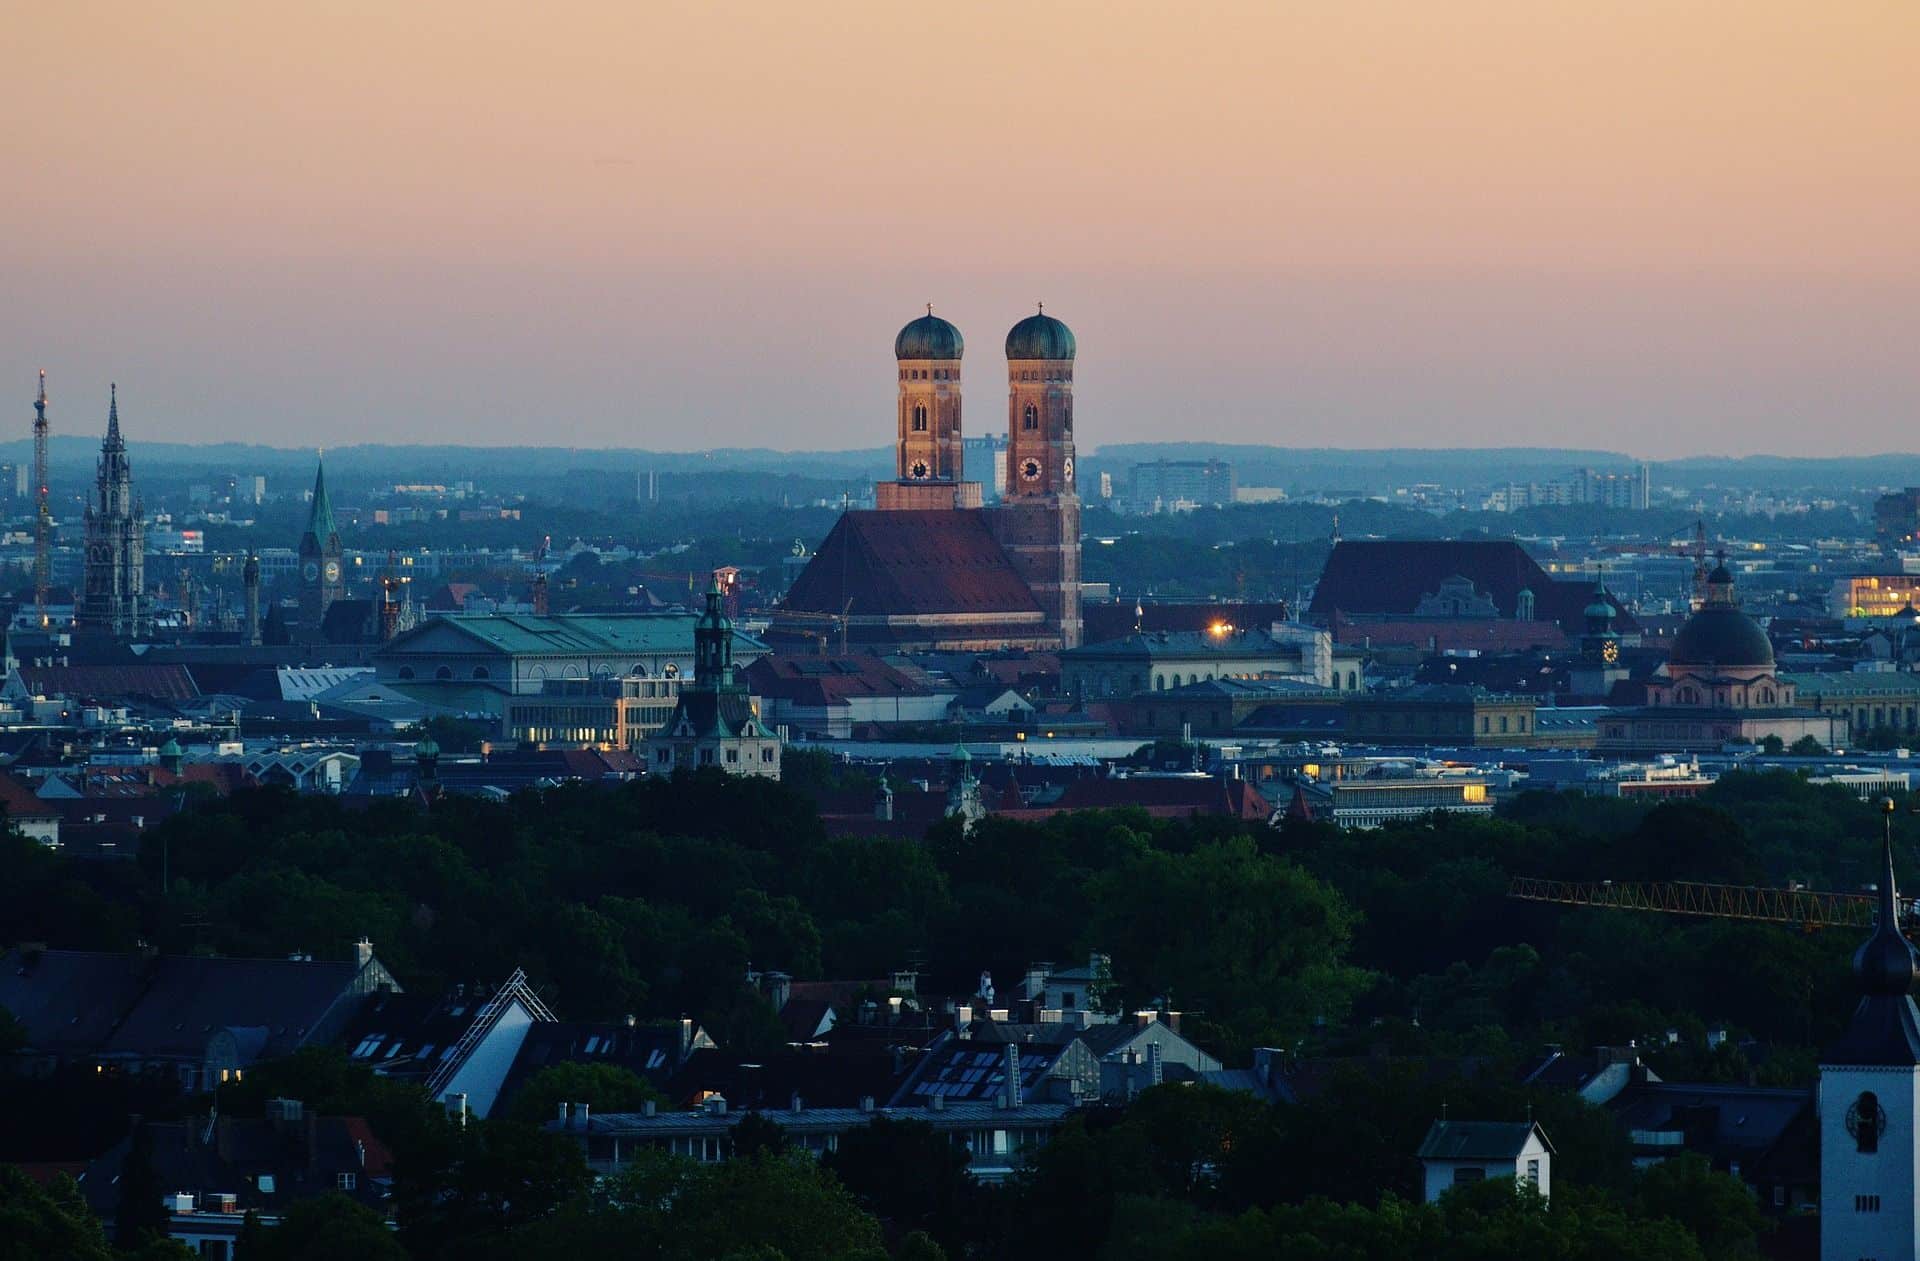 Seit einigen Monaten kann das Wahrzeichen der Stadt München, die Frauenkirche, wieder vollständig besucht werden. Foto: Alexa on Pixabay